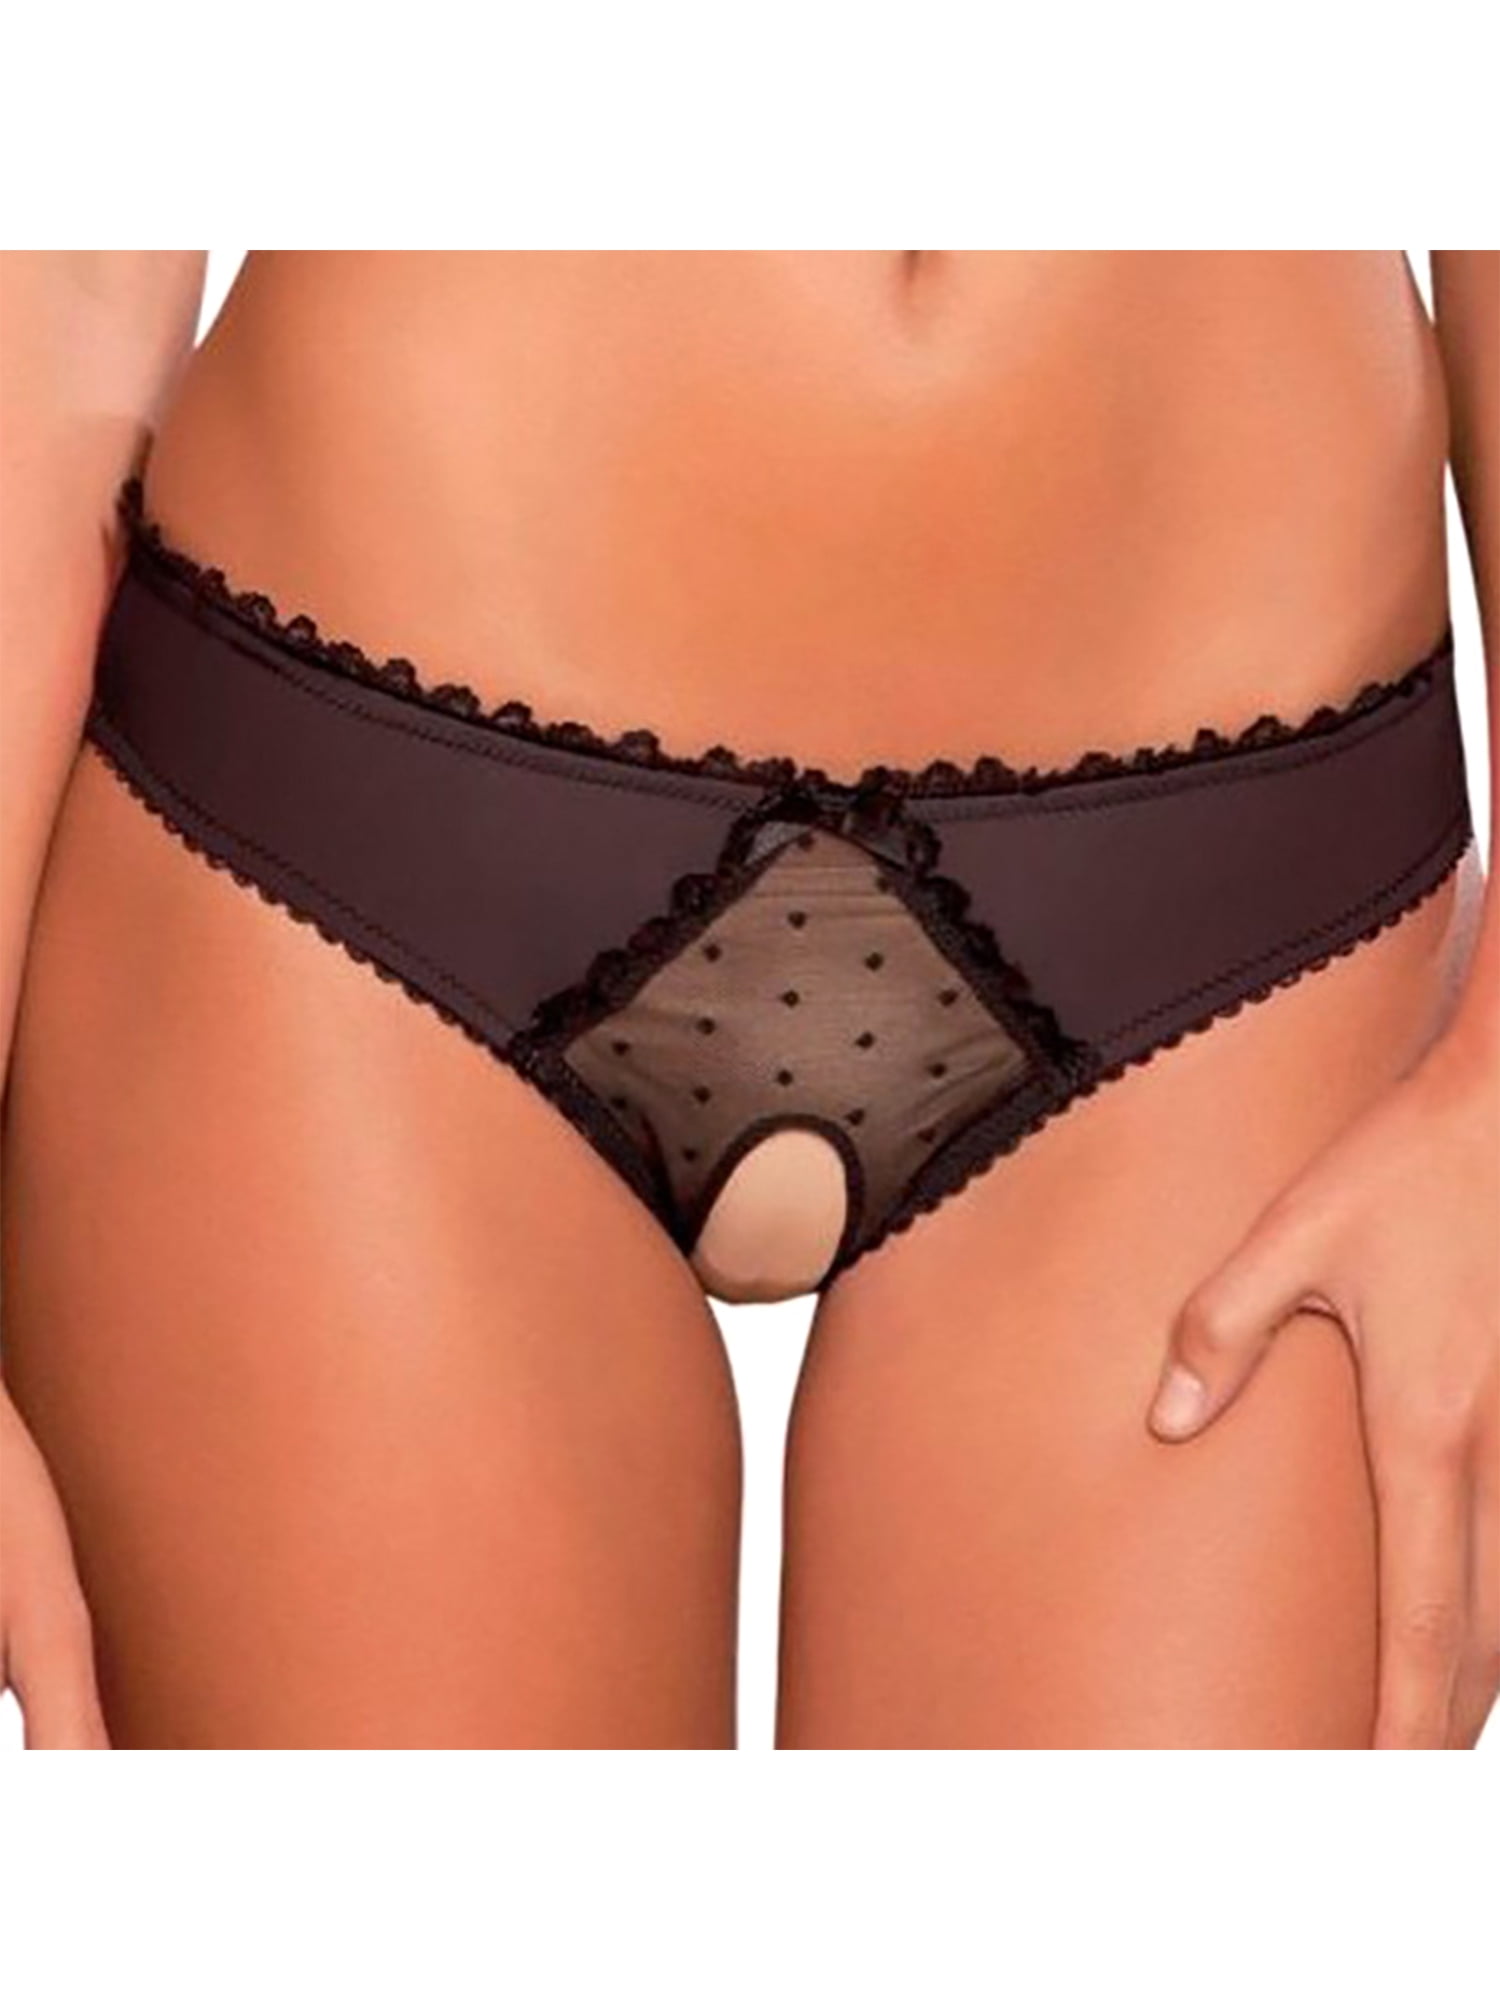 Women Ladies Lace G-string Briefs Panties Thongs Lingerie Underwear Knickers Hot 